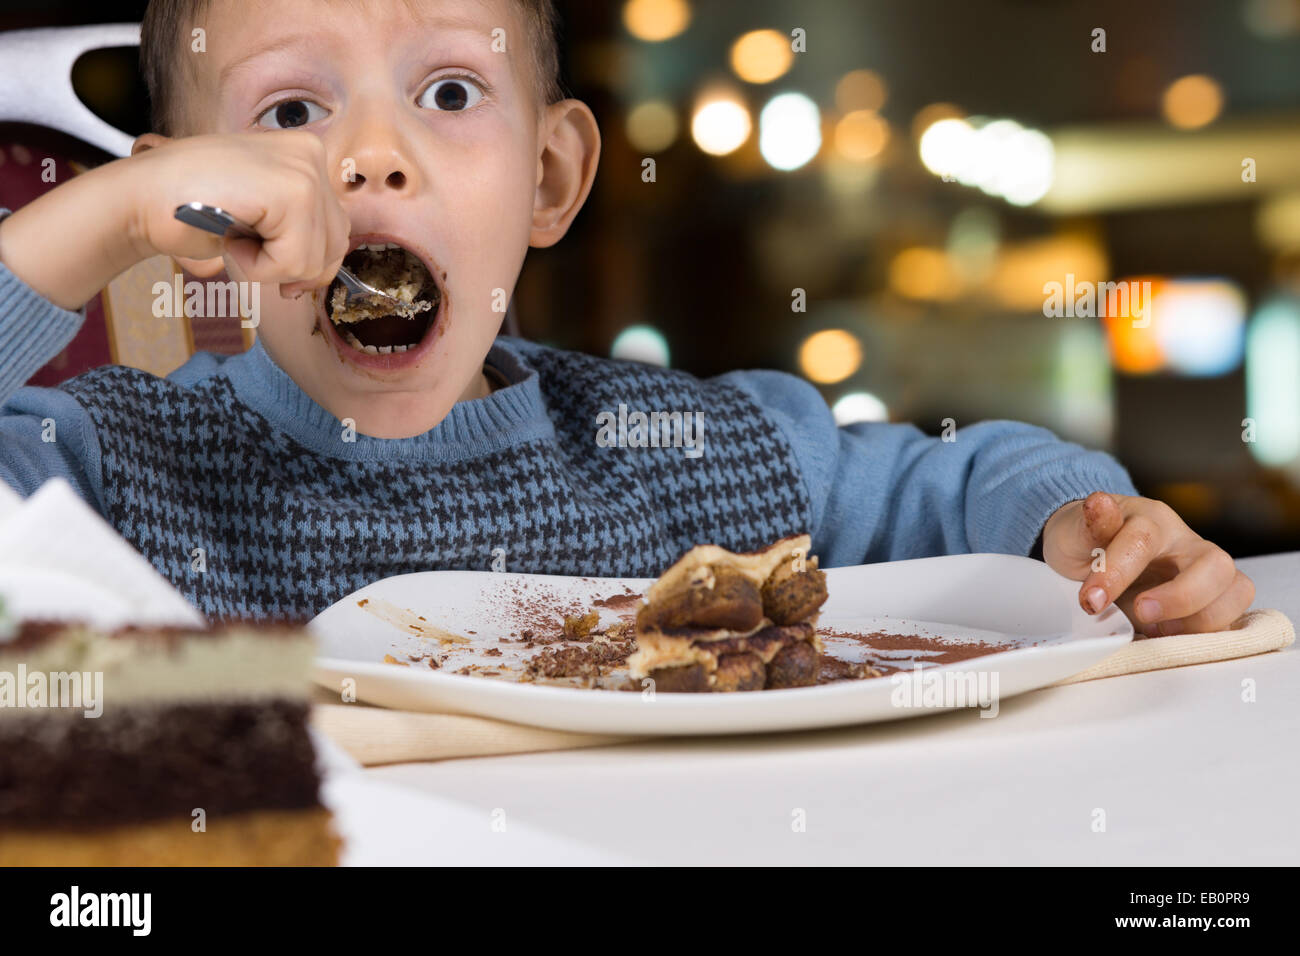 Fame little boy gobbling giù una fetta di gustosa torta al cioccolato con la bocca spalancata per un boccone come egli si siede a un tavolo in un ristorante. Foto Stock